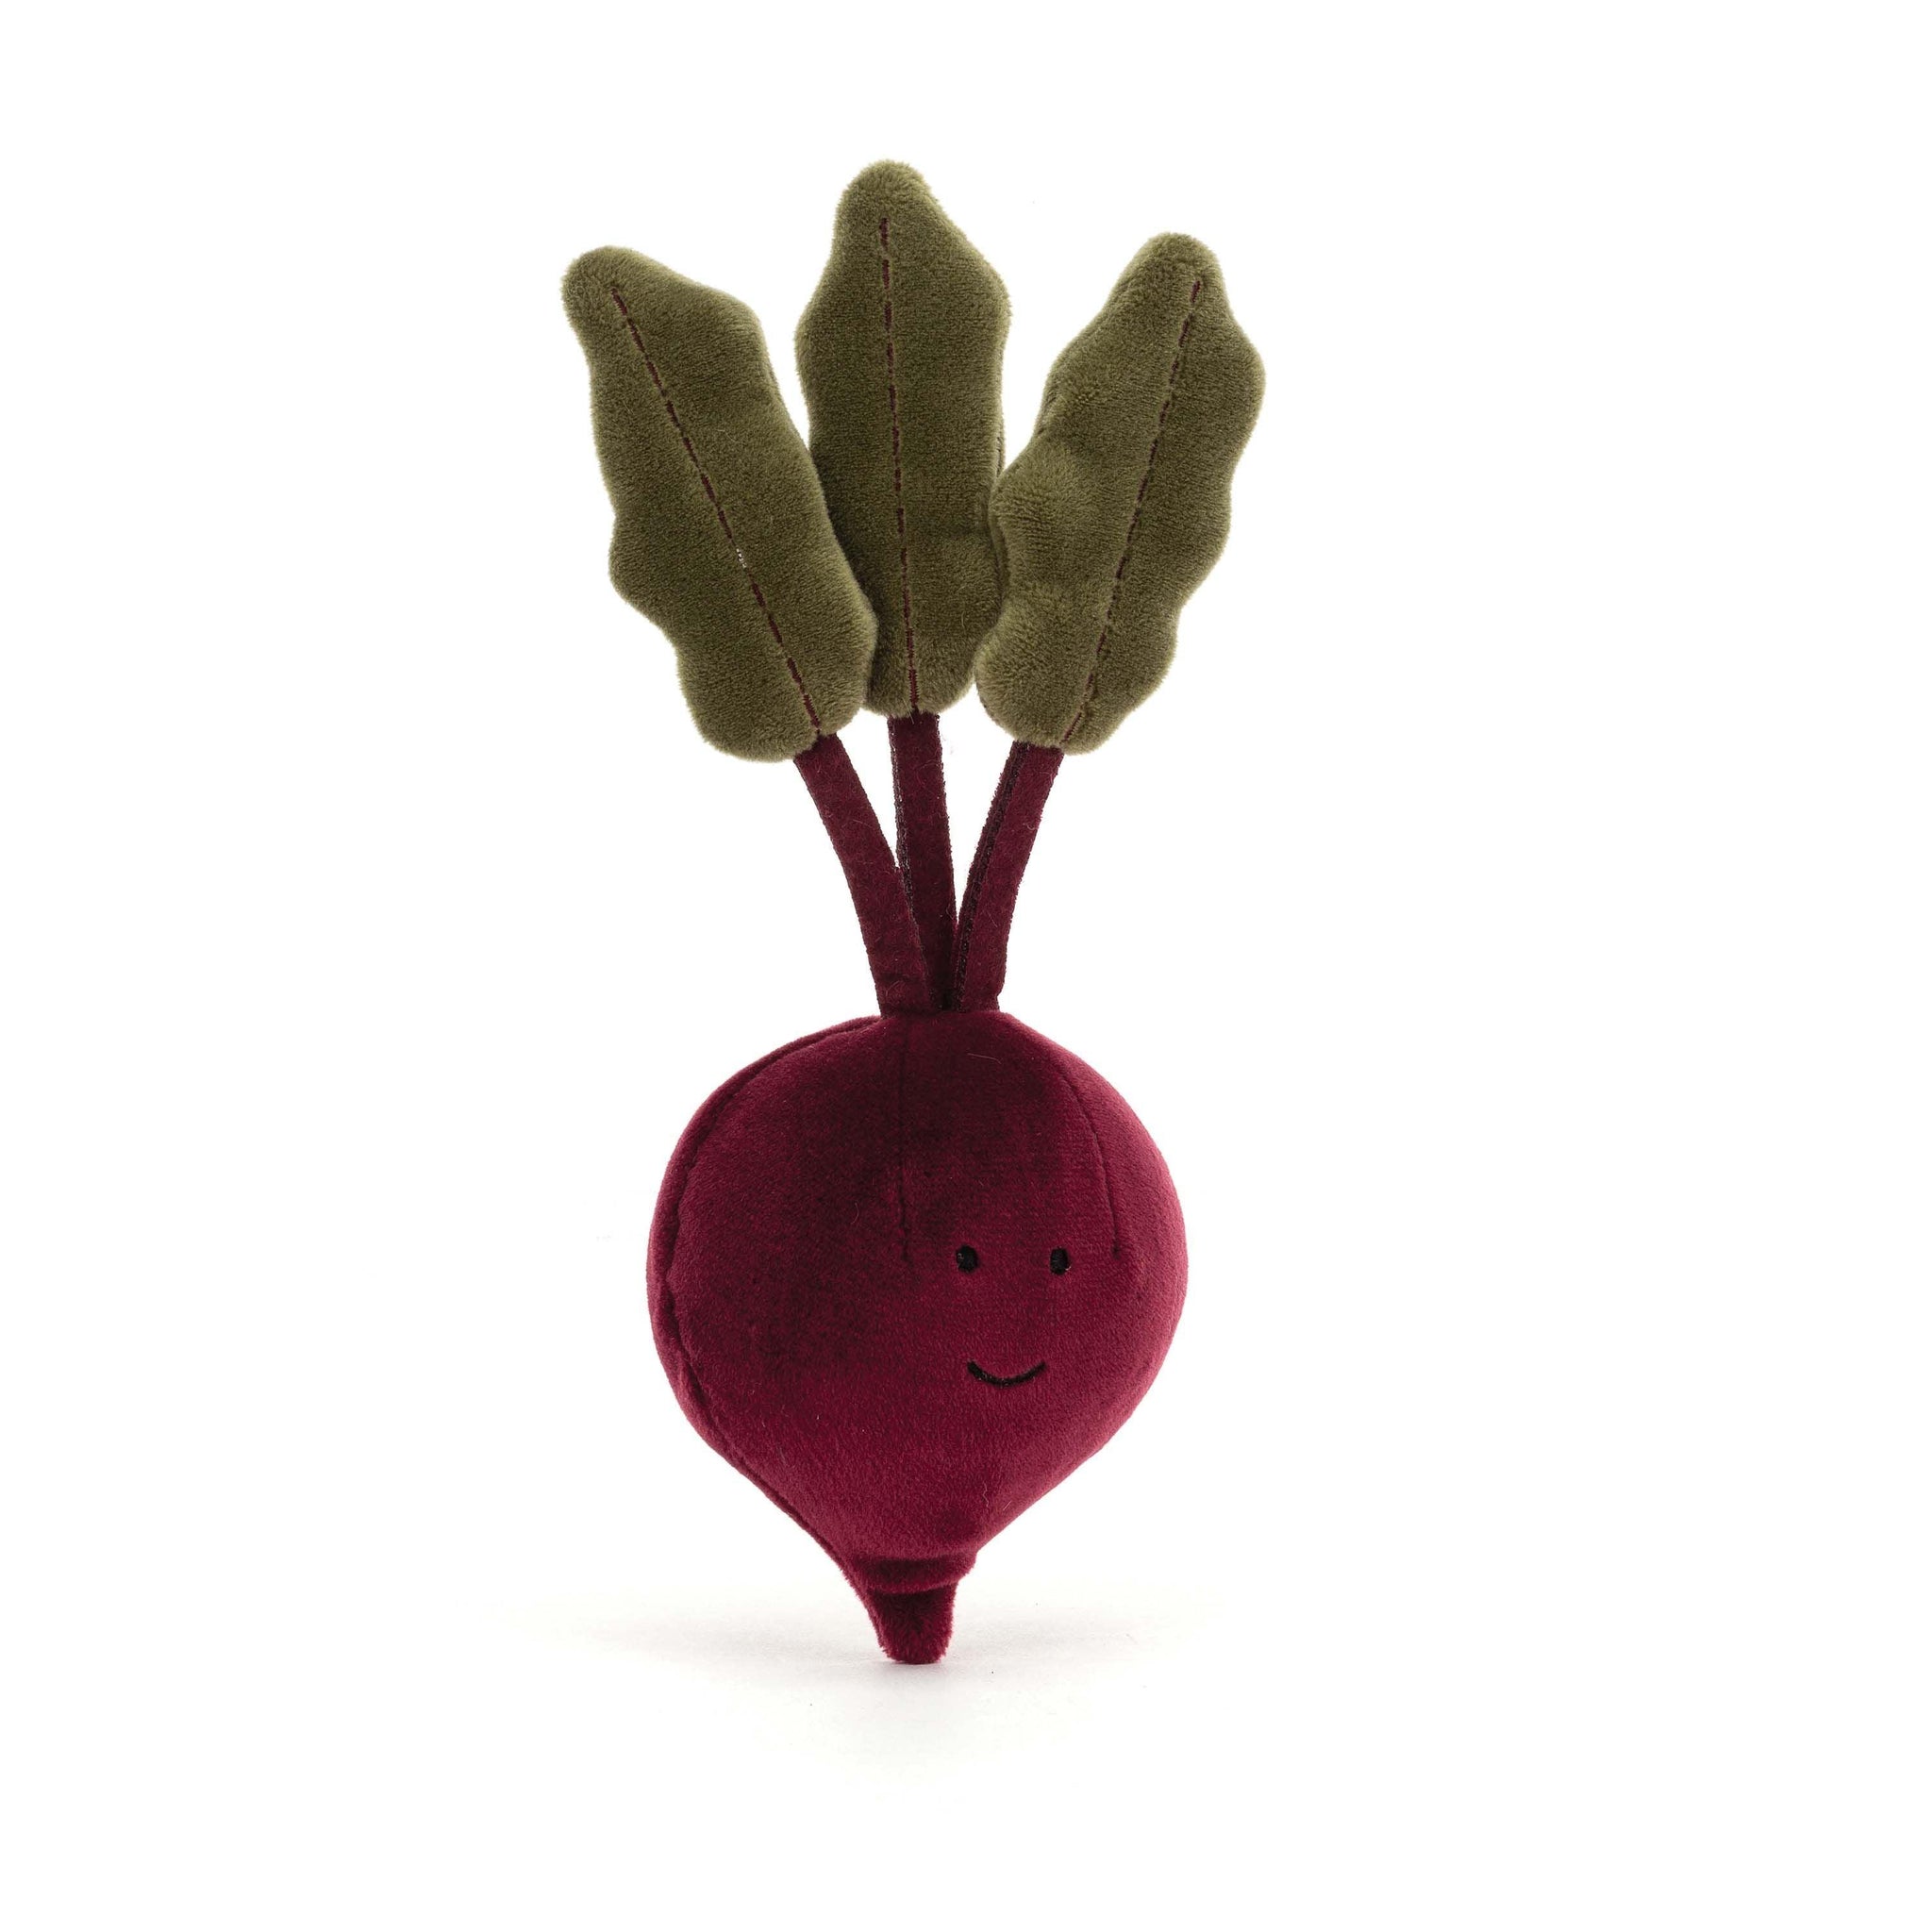 Jellycat - Vivacious Vegetable - Beetroot - Handworks Nouveau Paperie